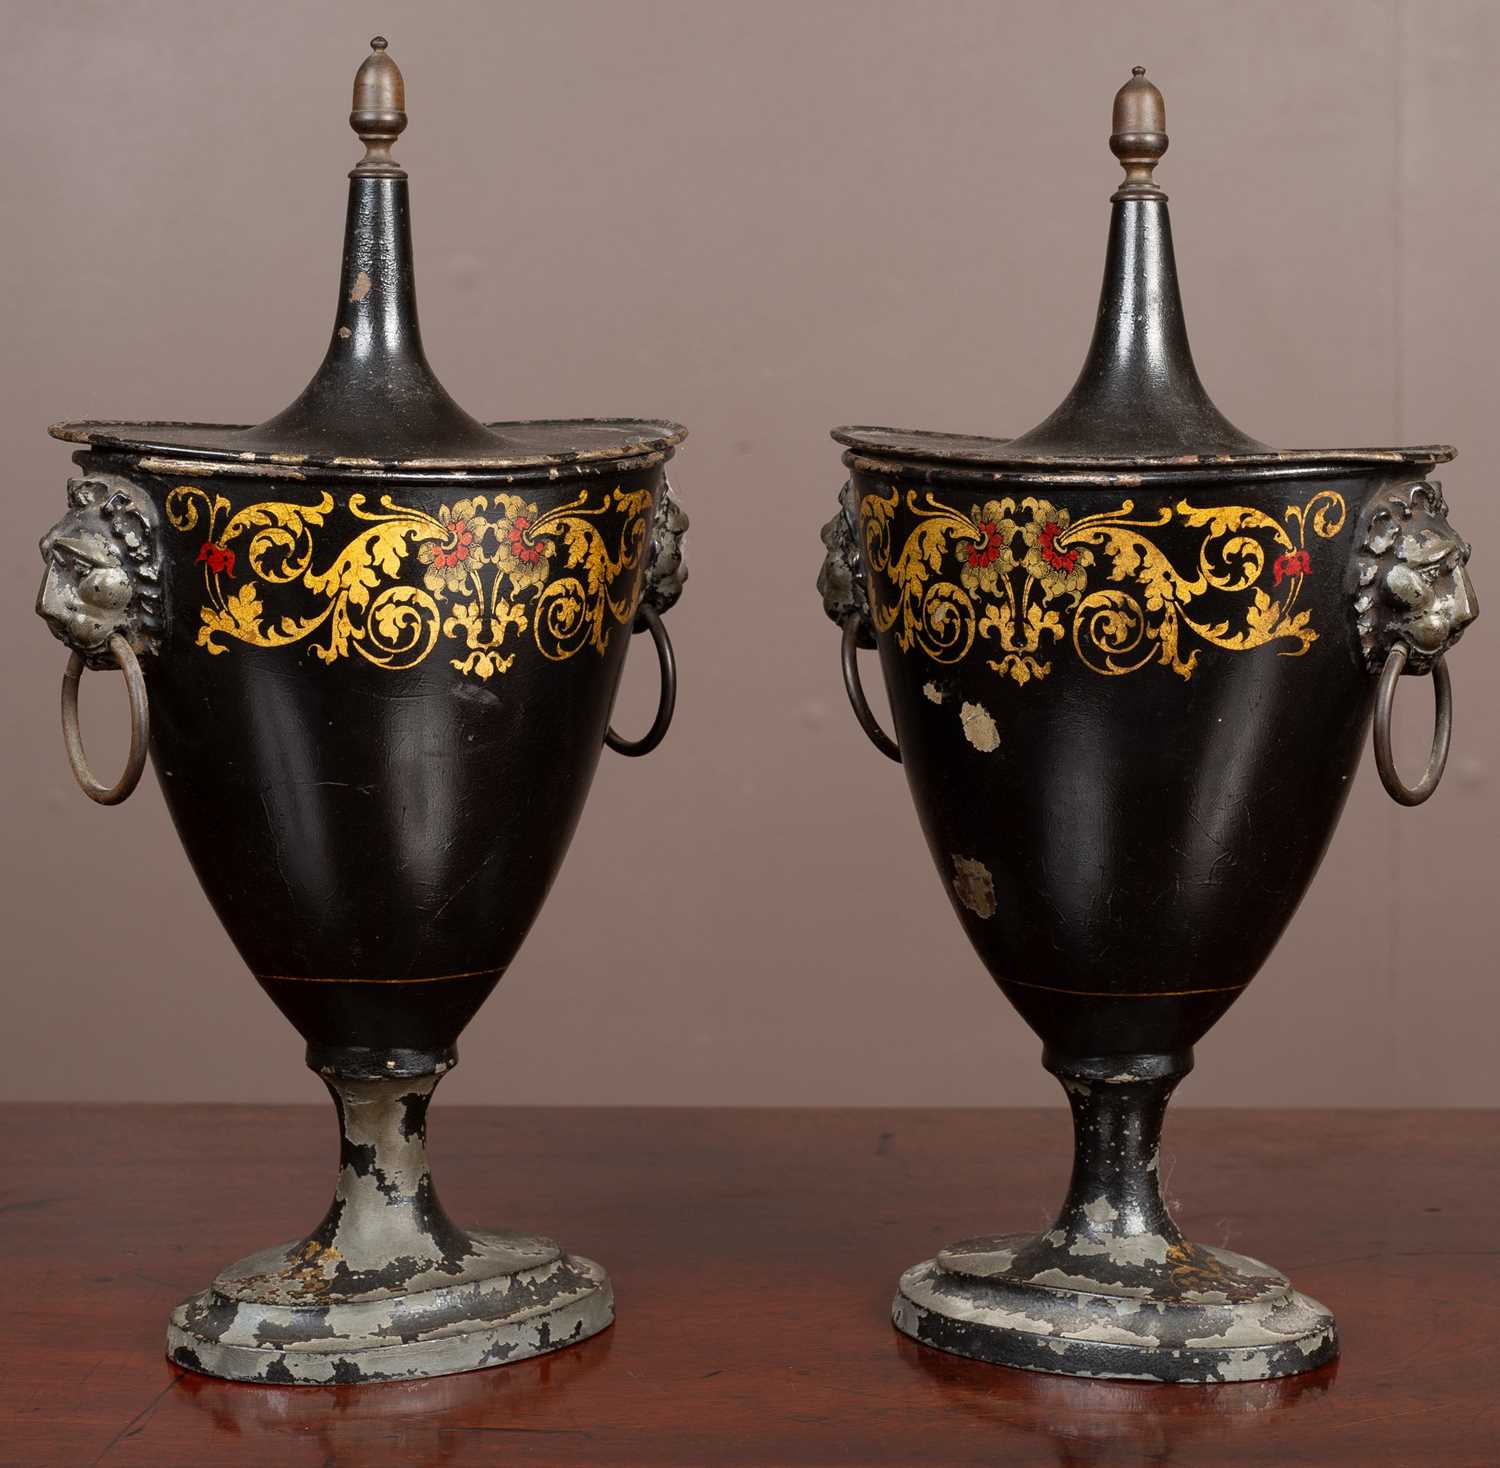 A pair of Regency pedestal toleware chestnut urns - Image 2 of 3